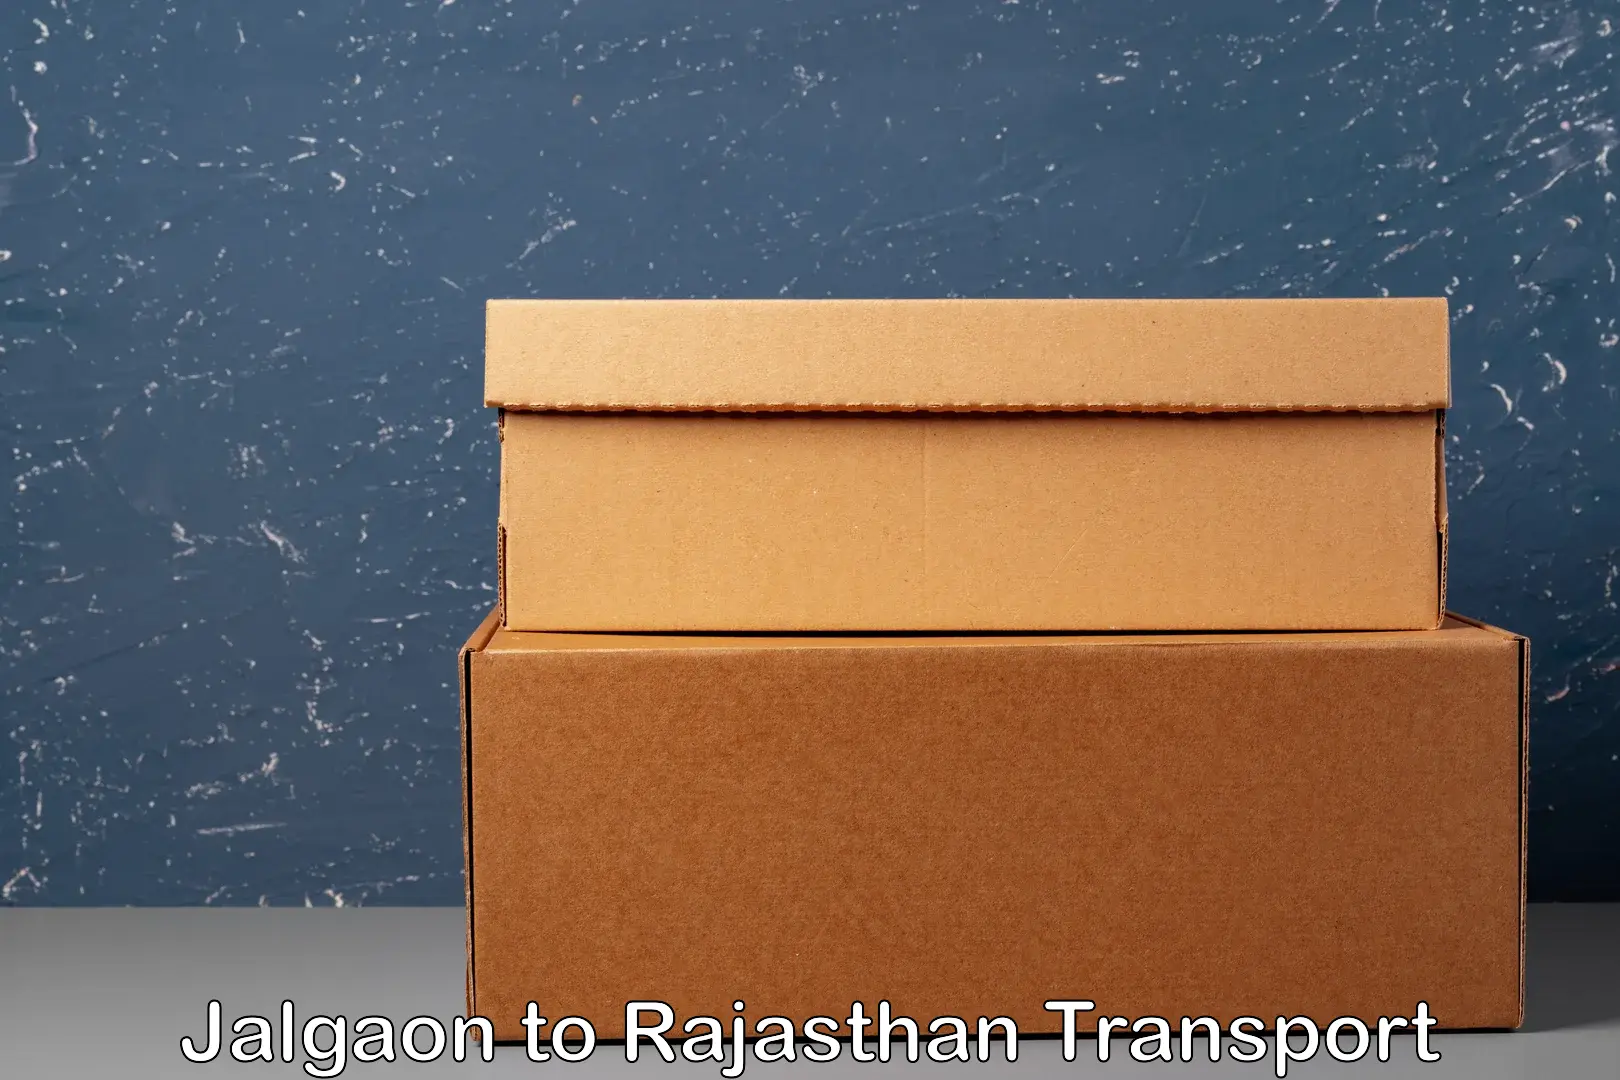 Commercial transport service Jalgaon to Khinwara